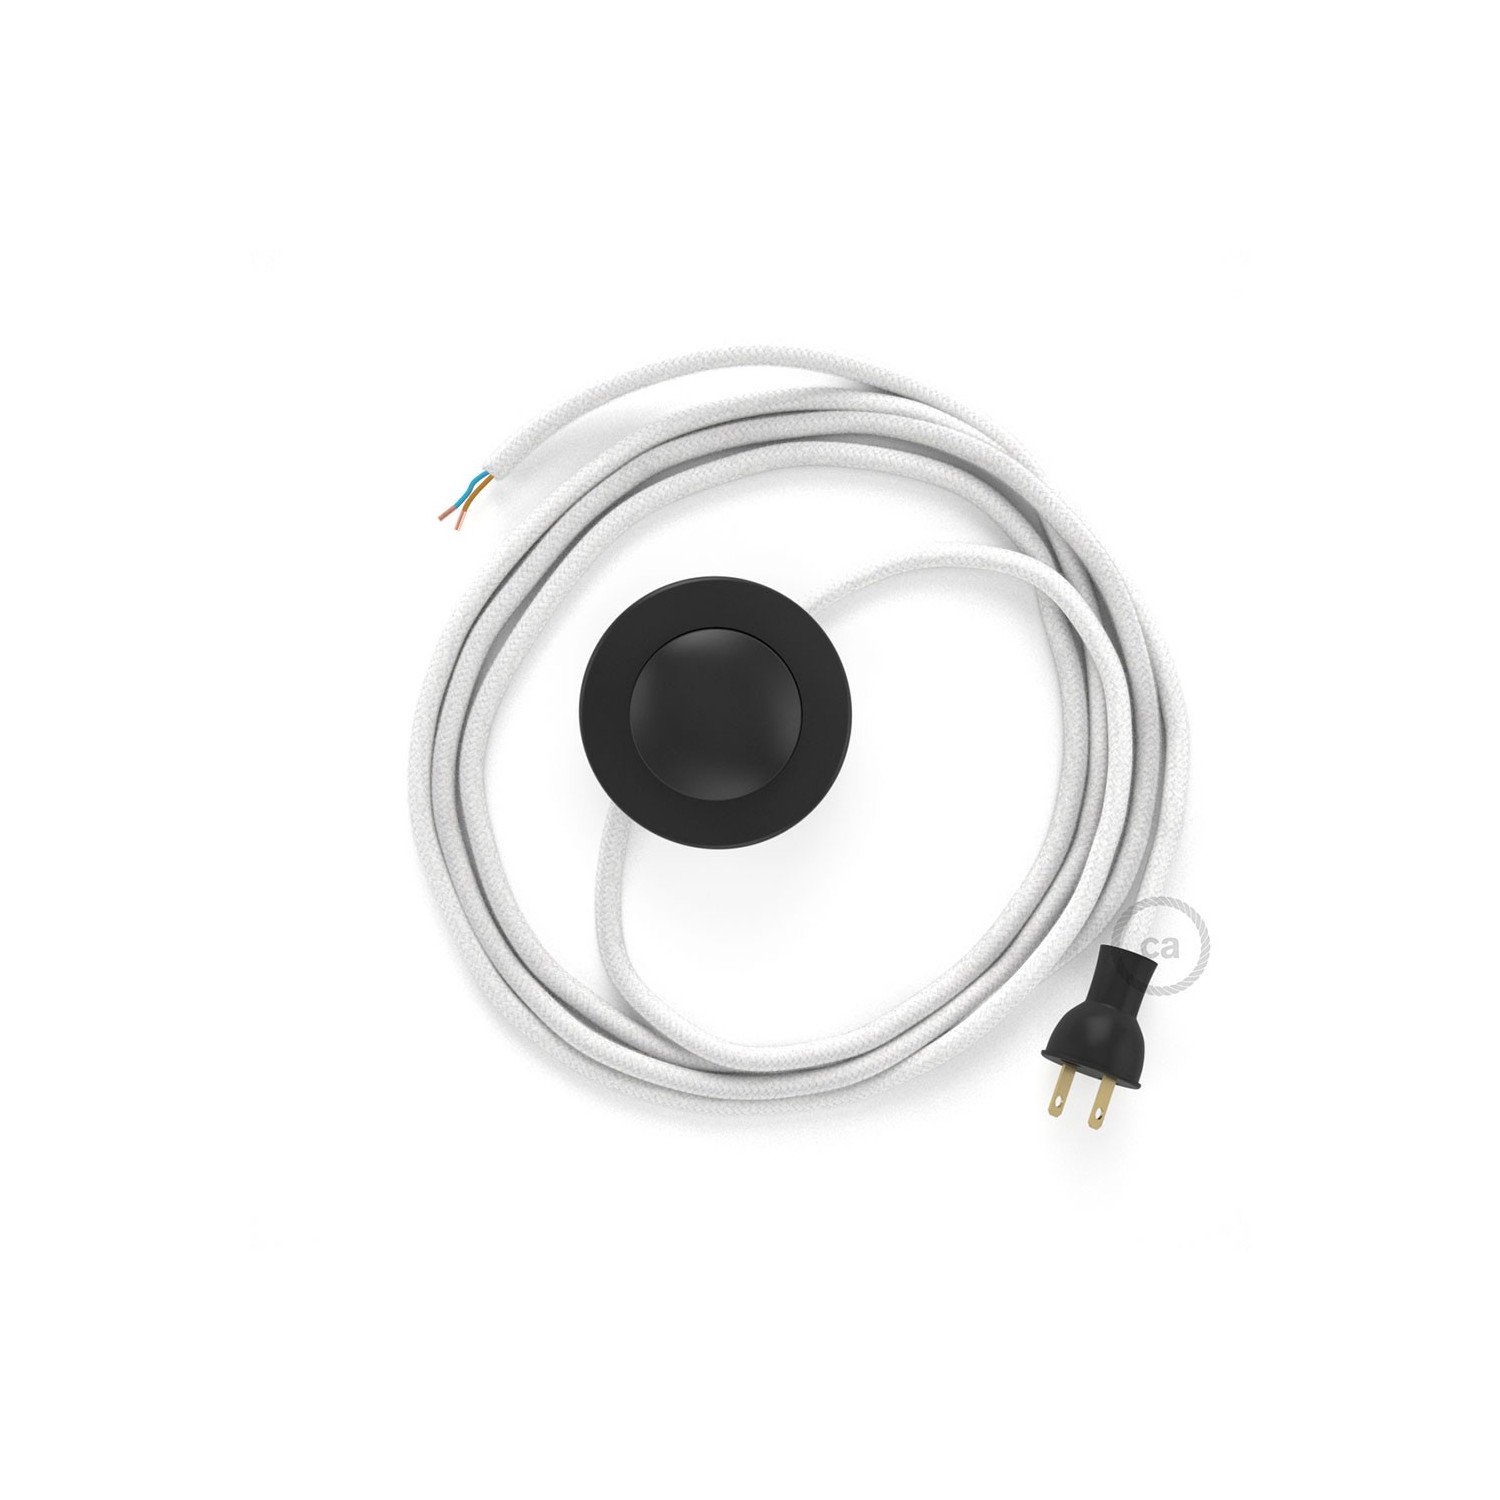 Cableado para lámpara de piso, cable RC01 Algodón Blanco 3 m. Elige tu el color de la clavija y del interruptor!